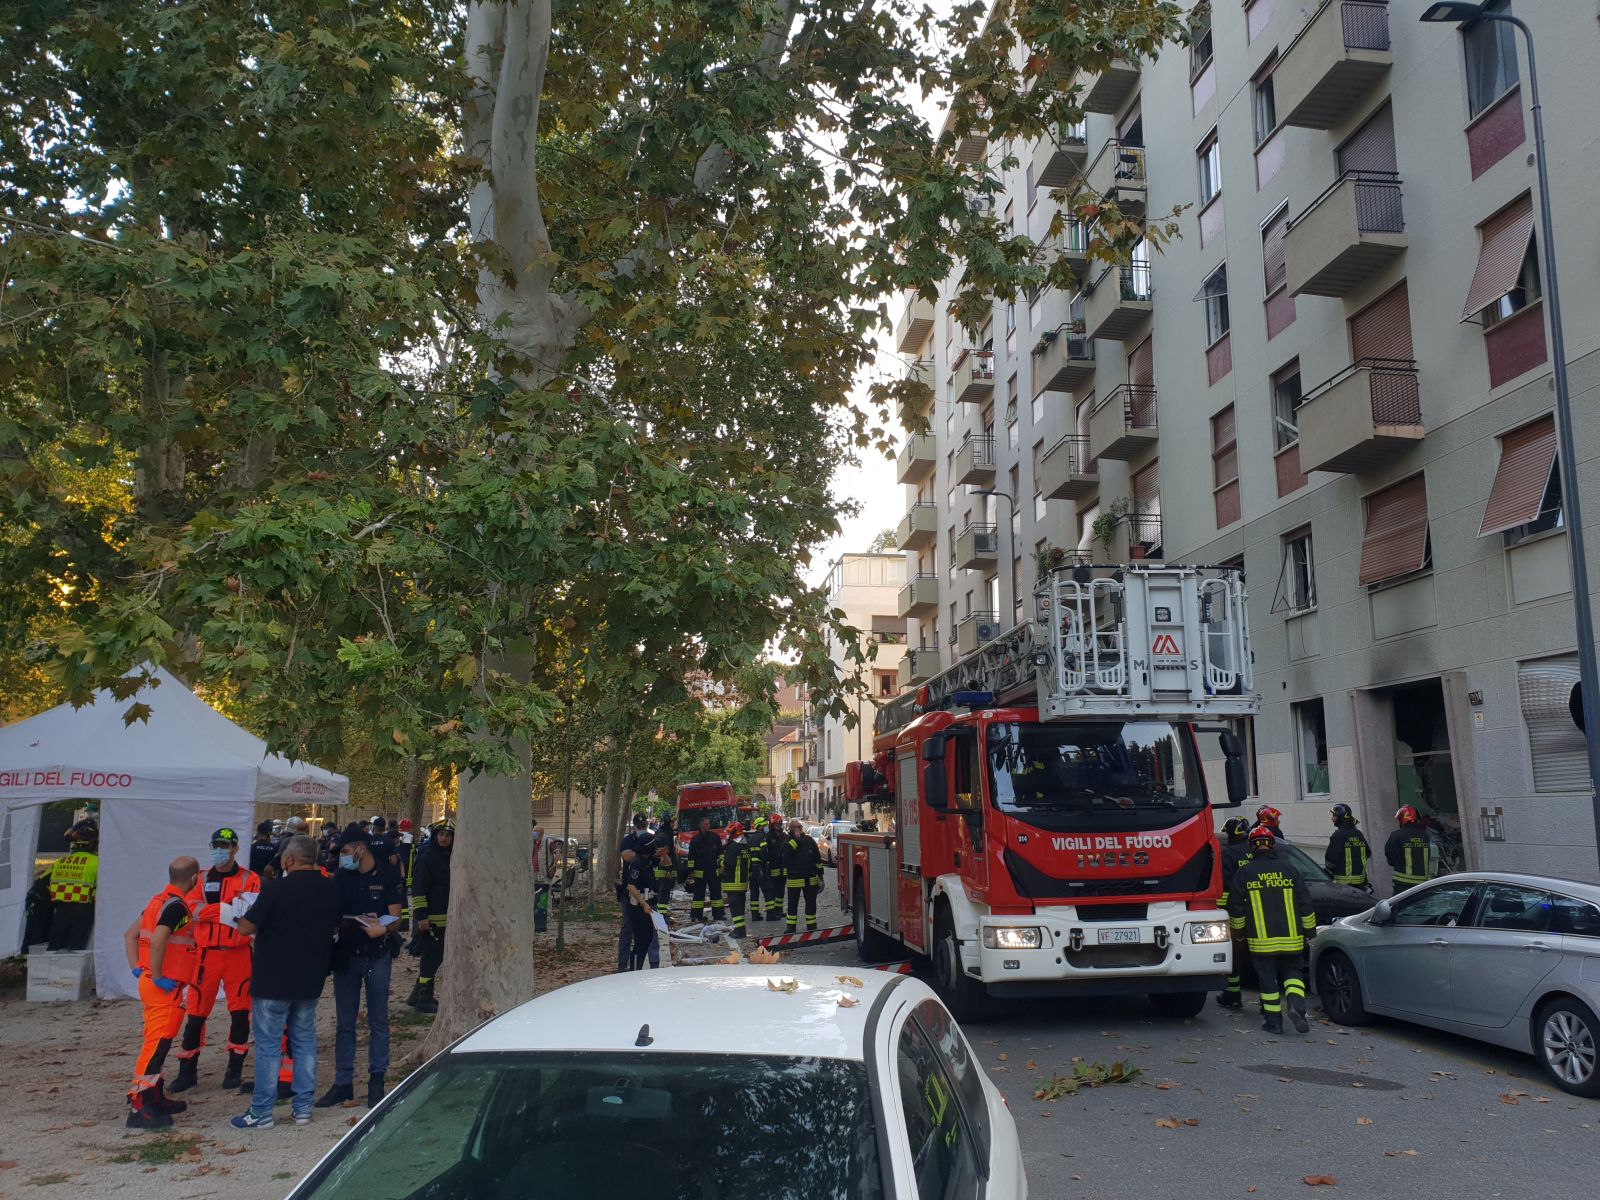 Esplosione in un condominio a Milano, 6 feriti di cui uno grave